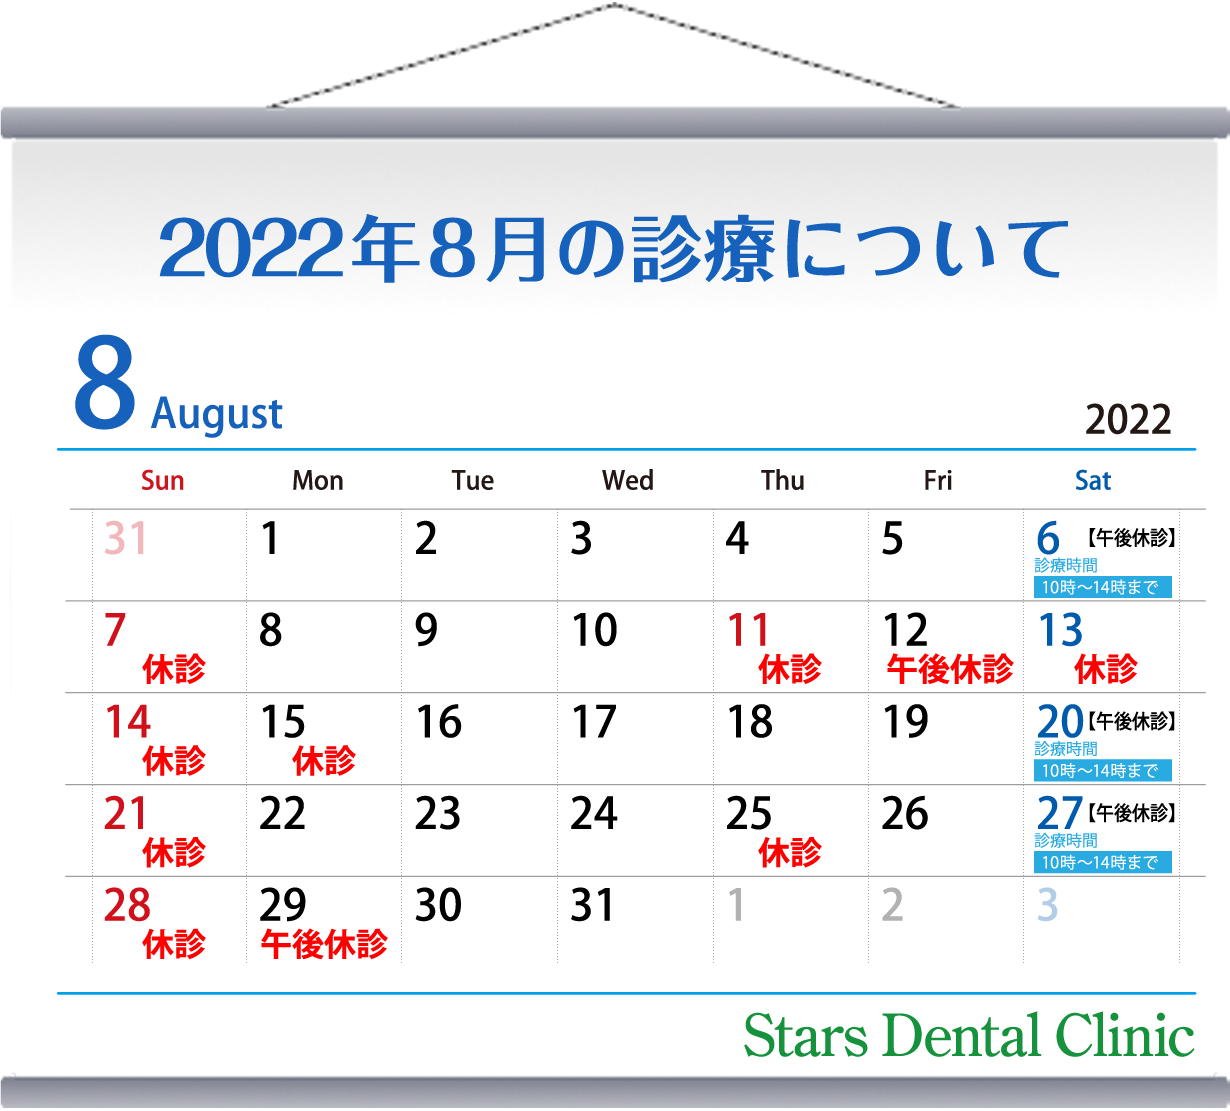 2022年8月の診療について